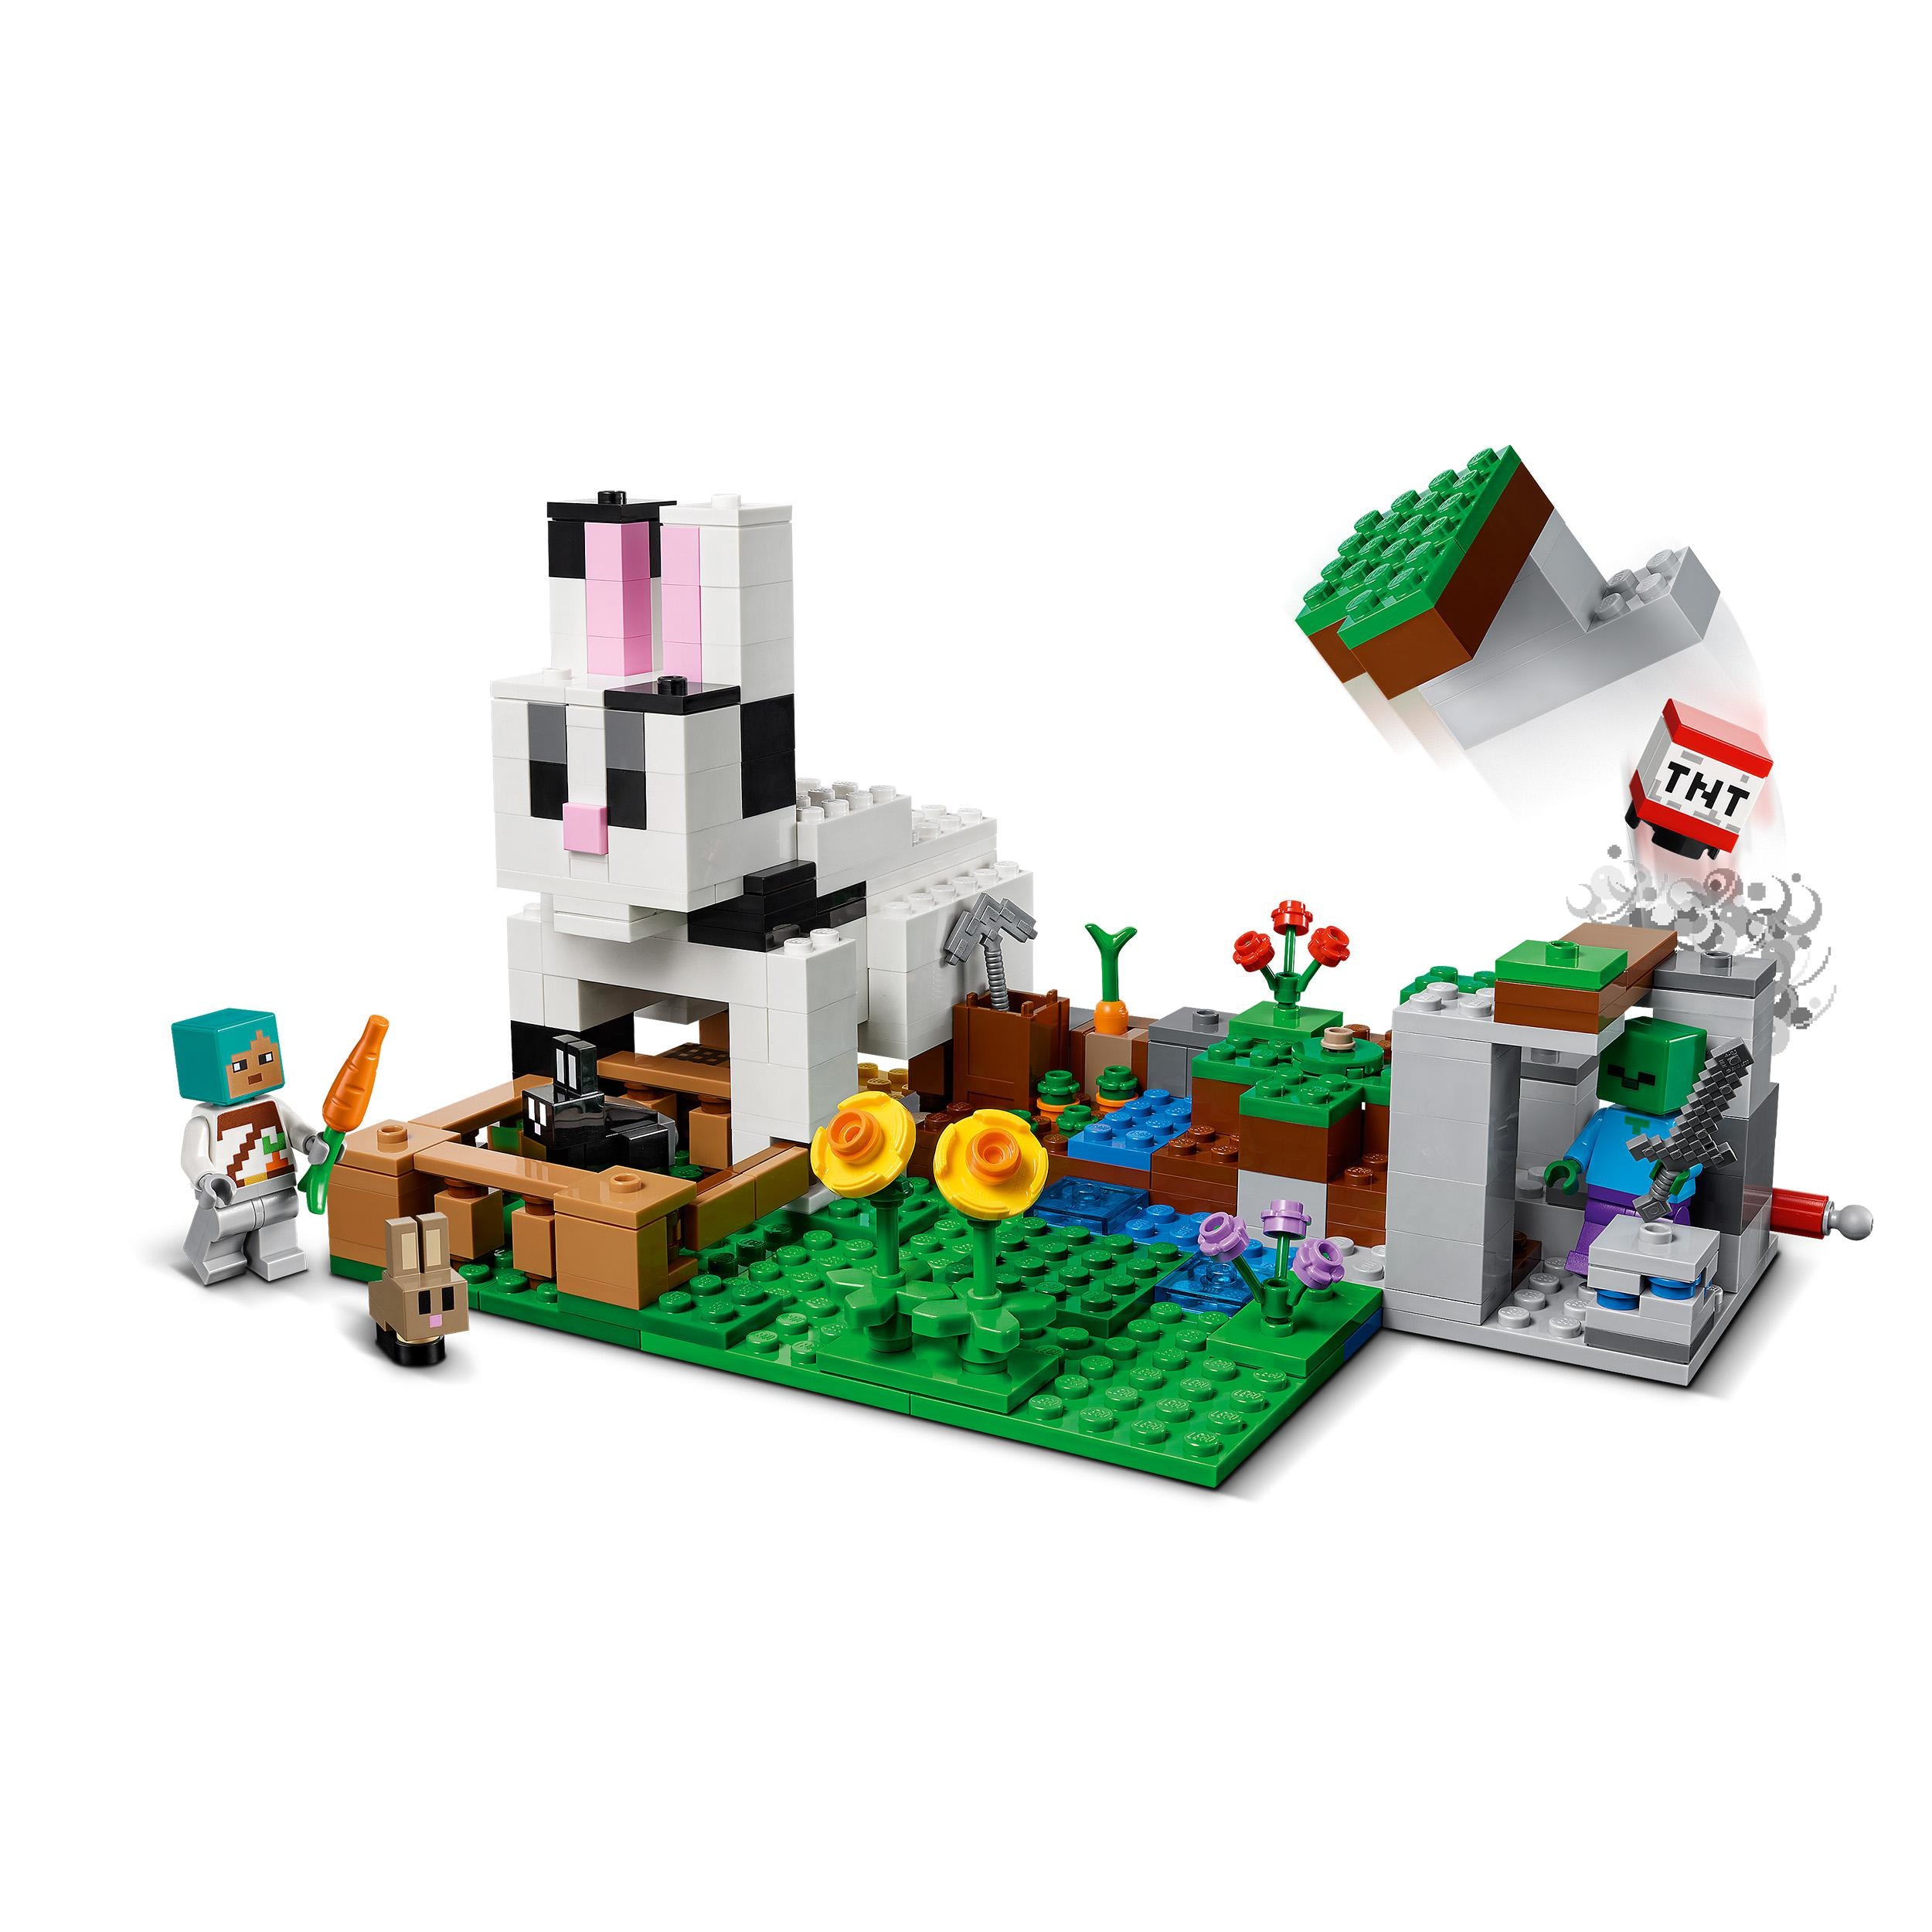 21181 LEGO® Minecraft - IL RANCH DEL CONIGLIO